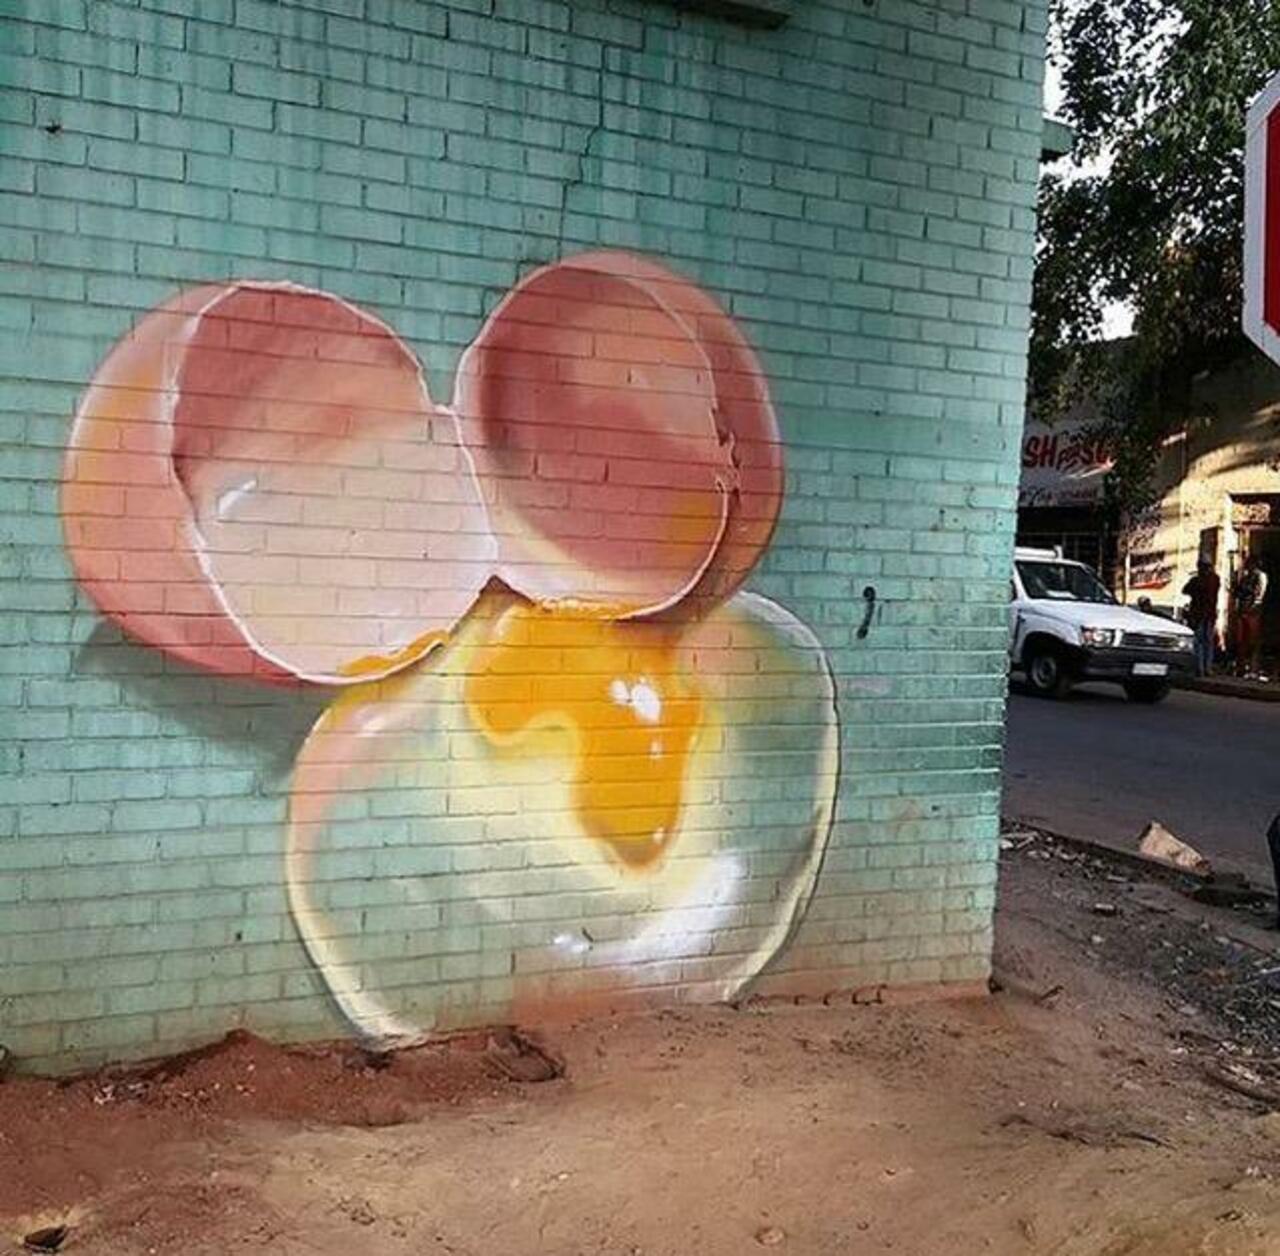 Street Art by falco1 in Johannesburg SA  

#art #graffiti #mural #streetart http://t.co/VdRRhjlNPn